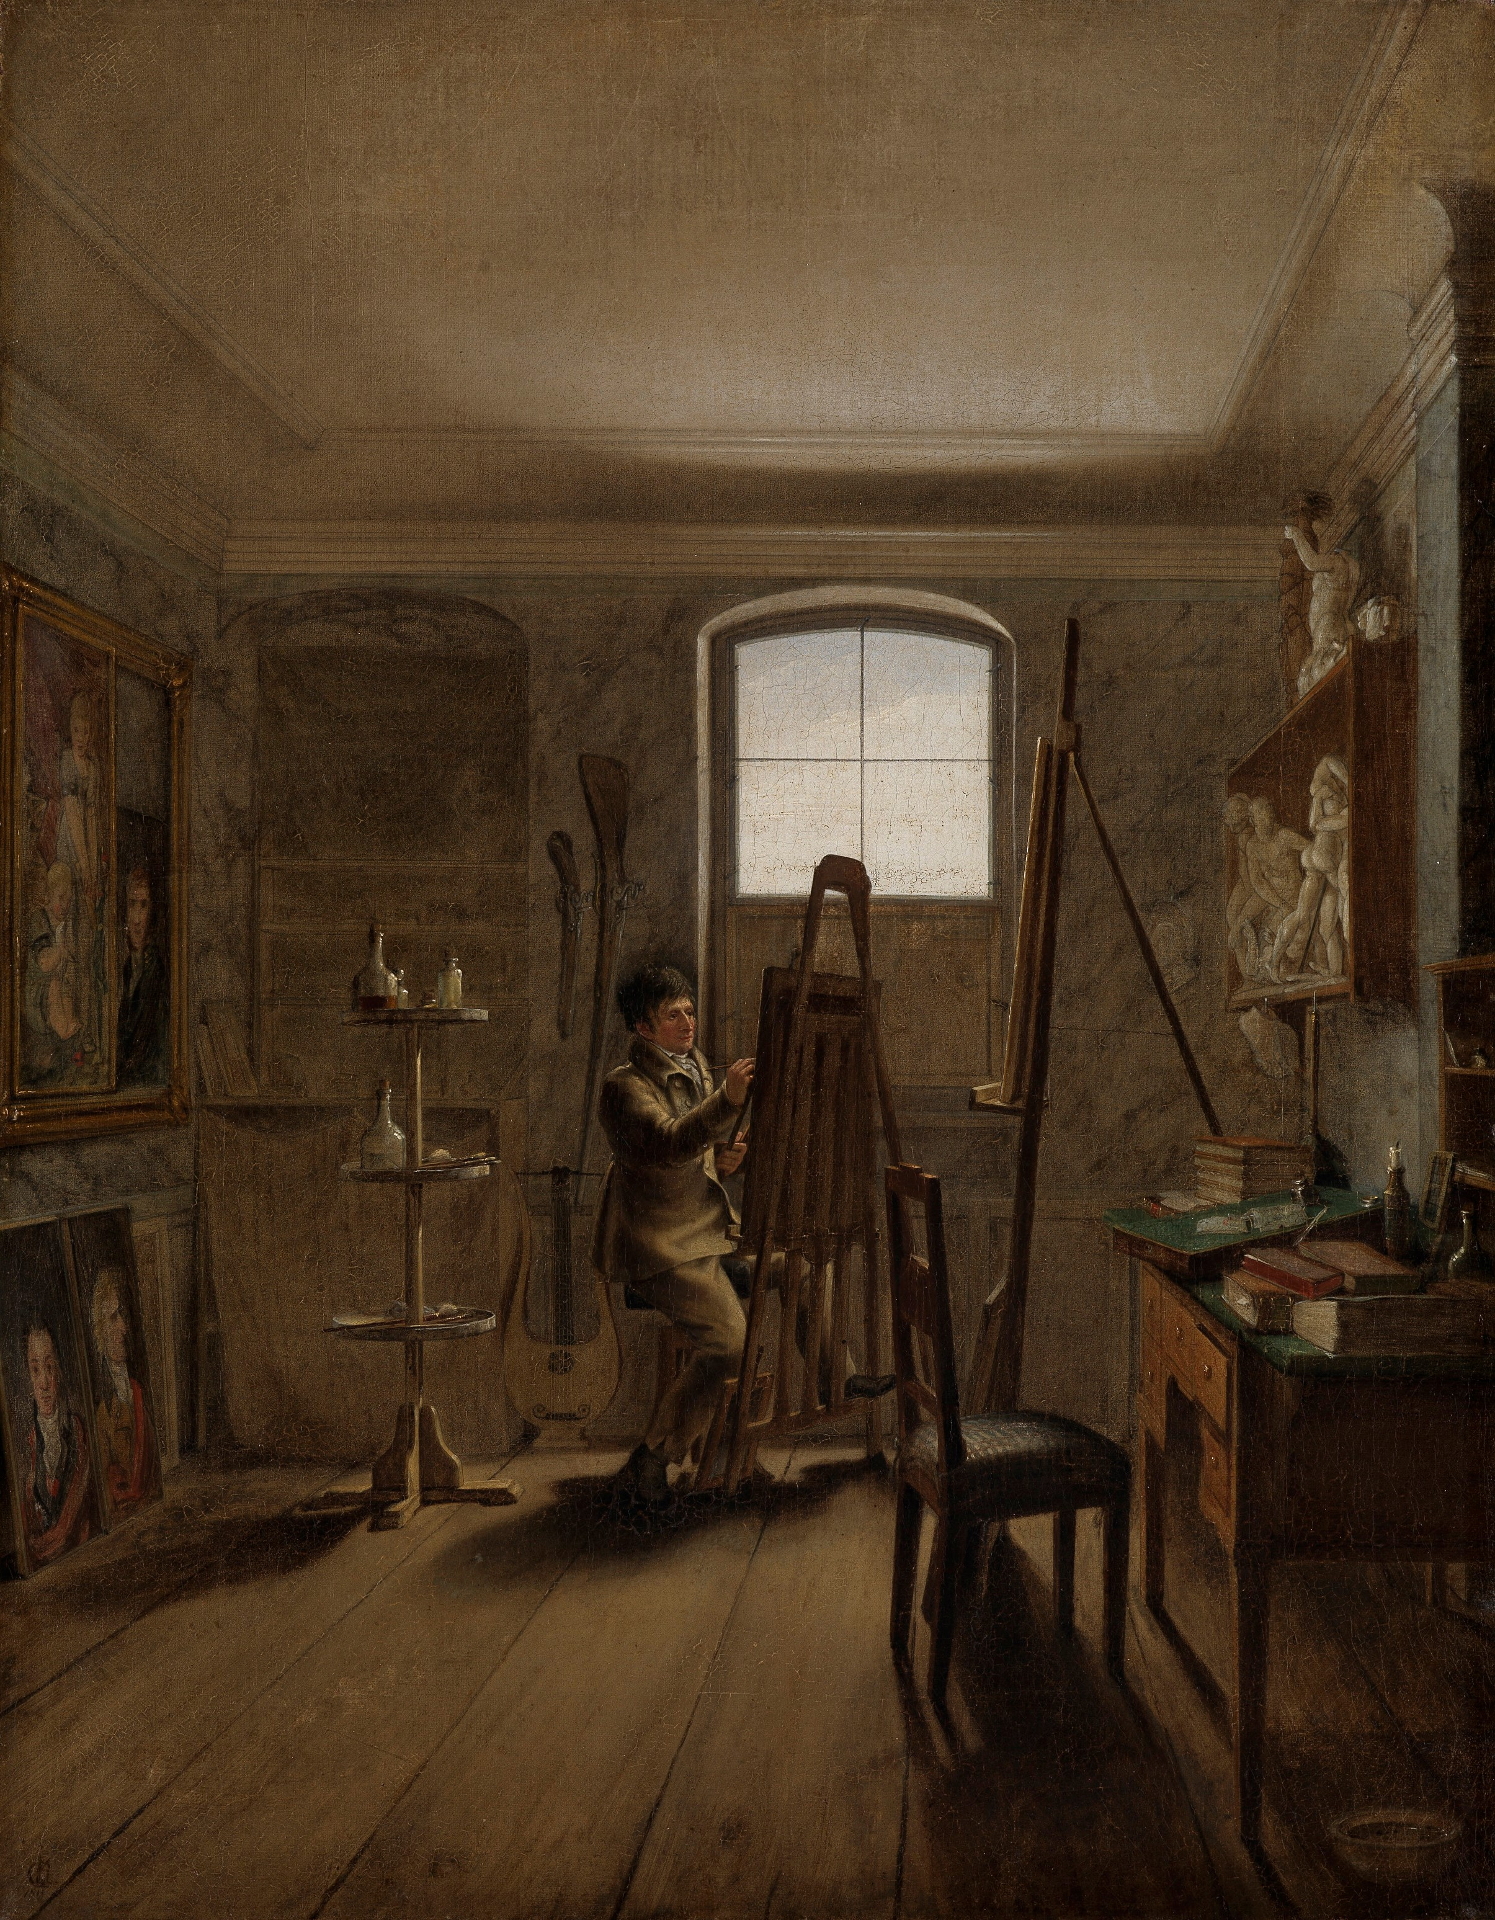 Gemälde einer Atelierszene von Georg Friedrich Kersting. Es zeigt einen Mann, der in seinem Atelier am Fenster an einer Staffelei sitzt.